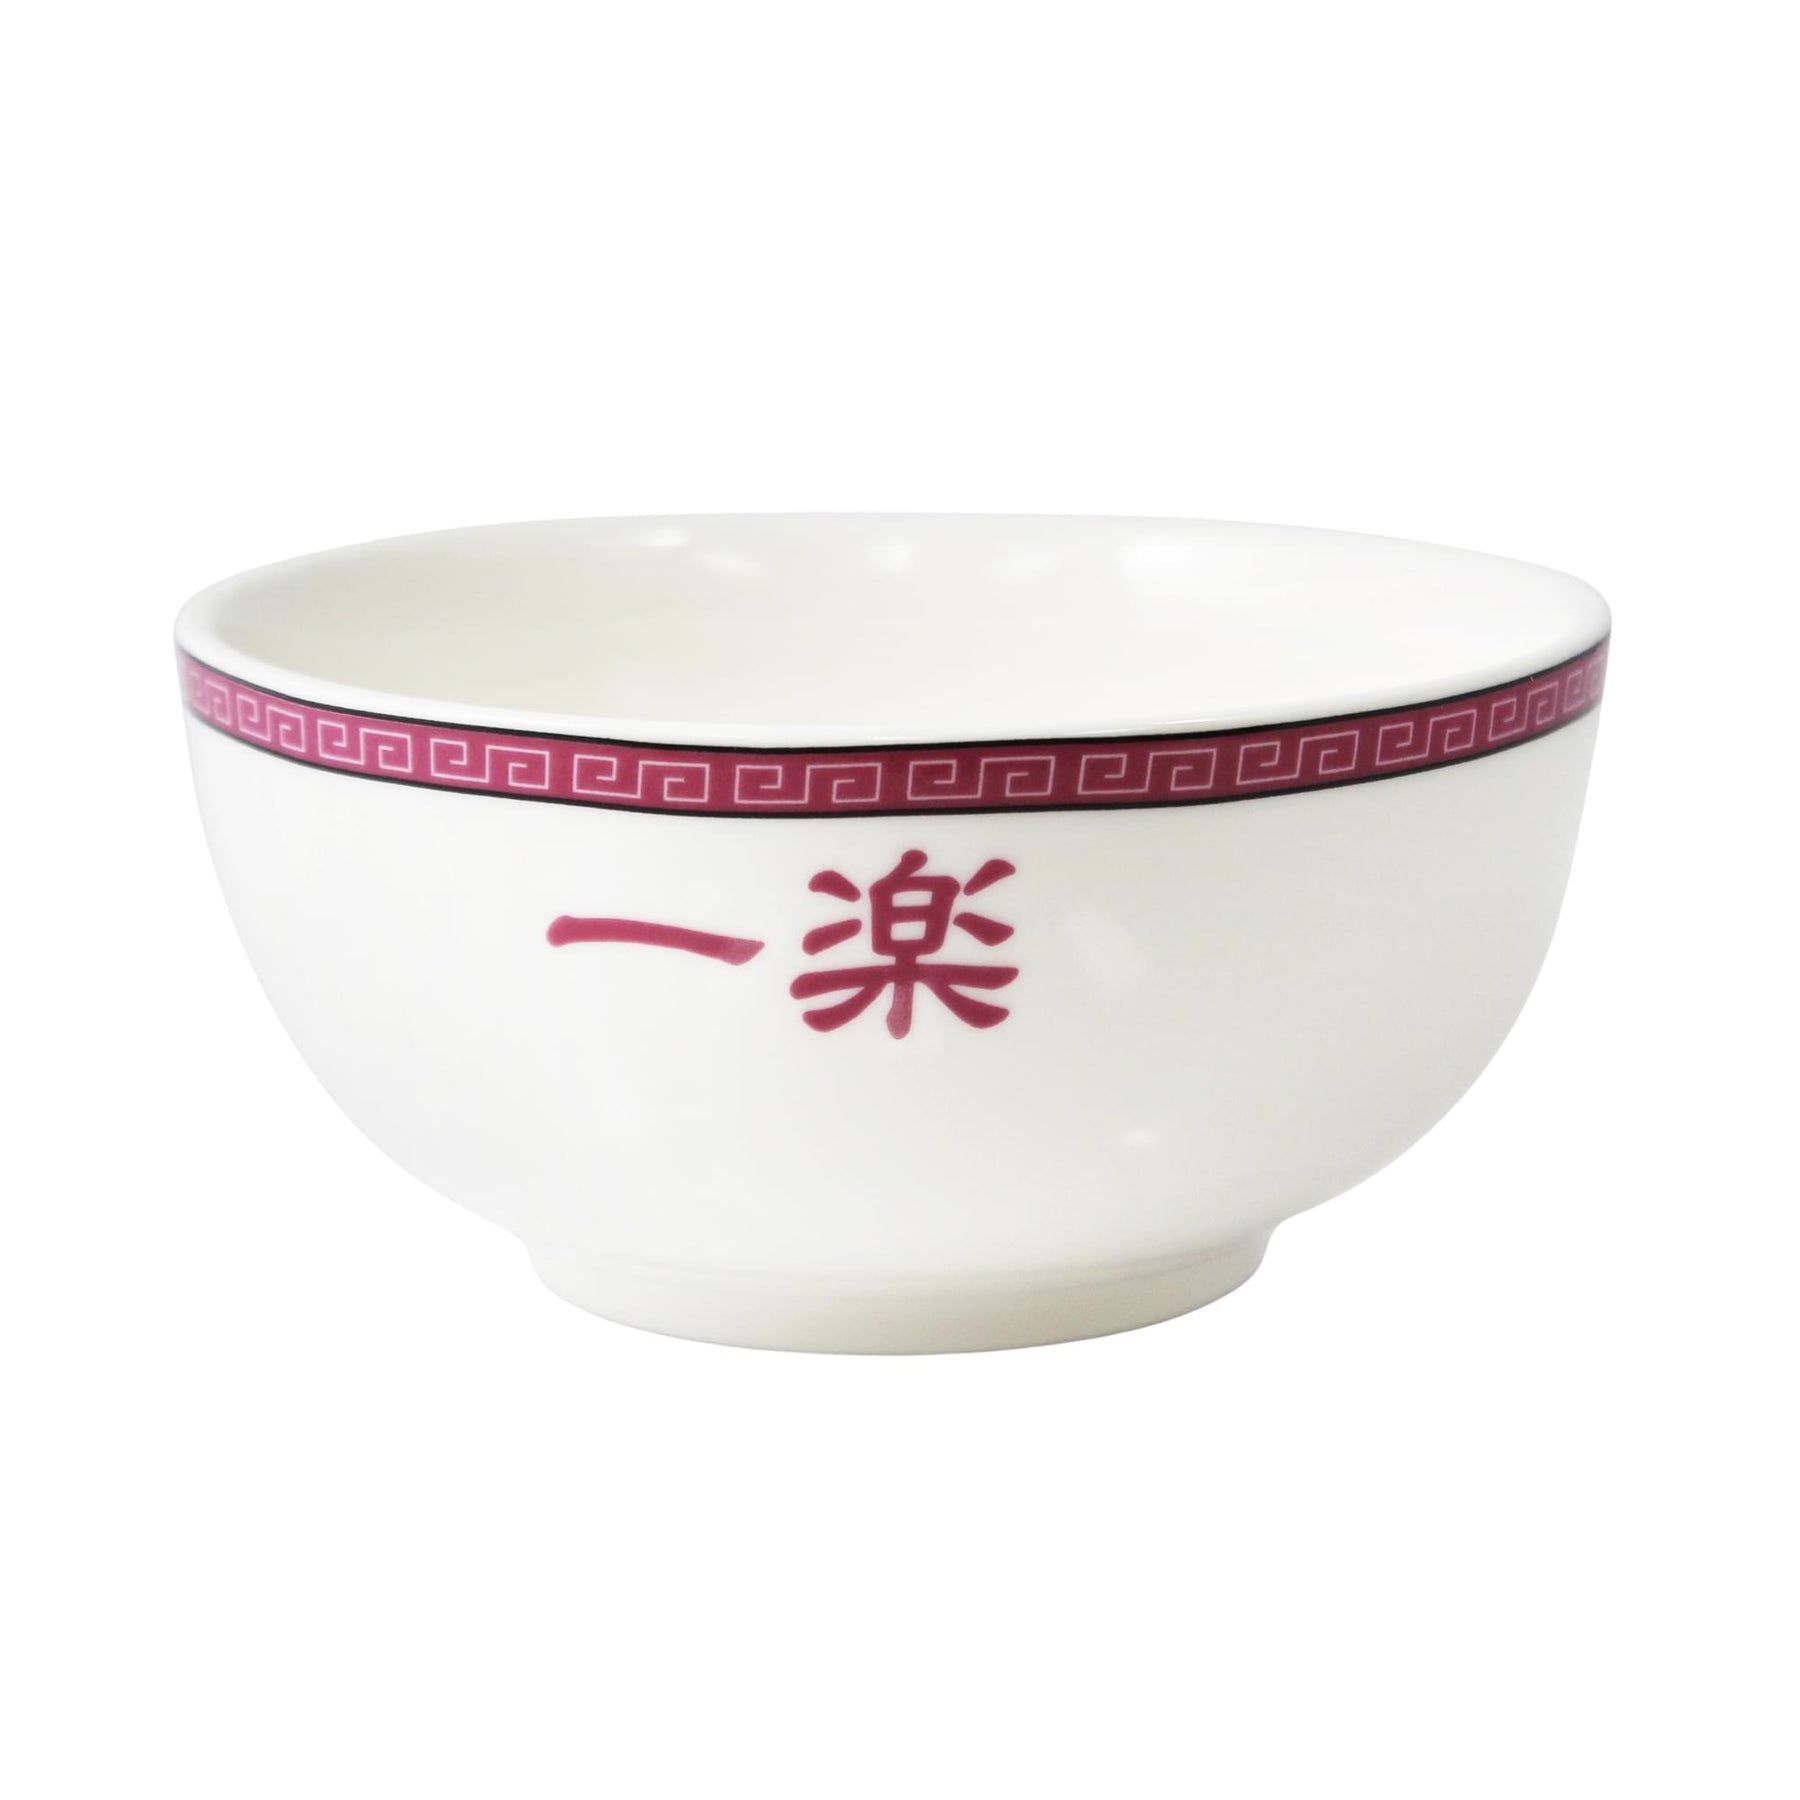 Naruto Ichiraku Ramen Shop 24oz Ceramic Ramen Bowl